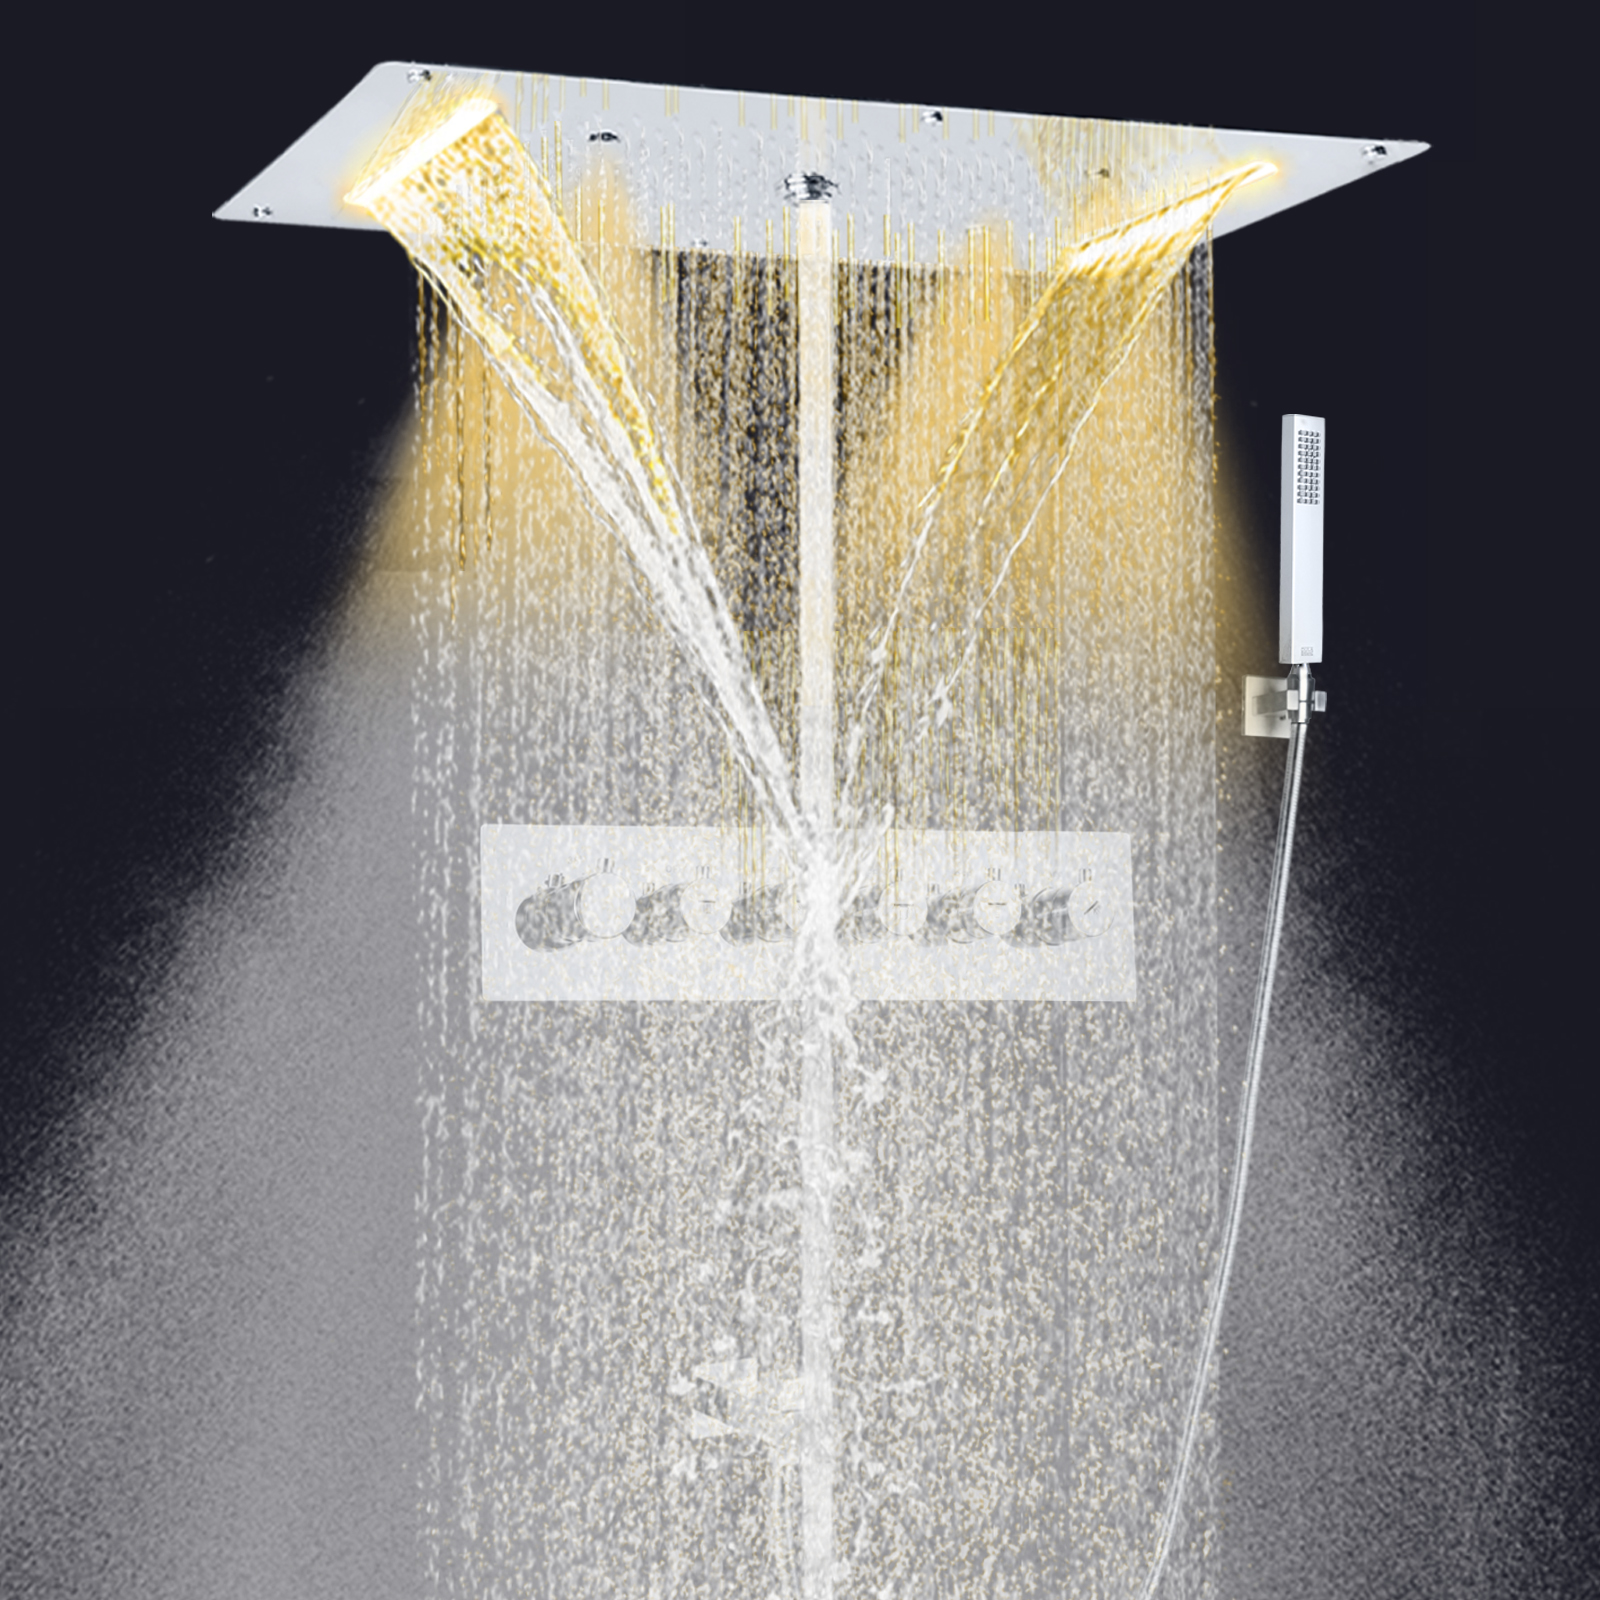 Moderno cromo polido termostática torneira do chuveiro conjunto chuva 70x38 cm led cachoeira spray chuvas torneira com mão segurar